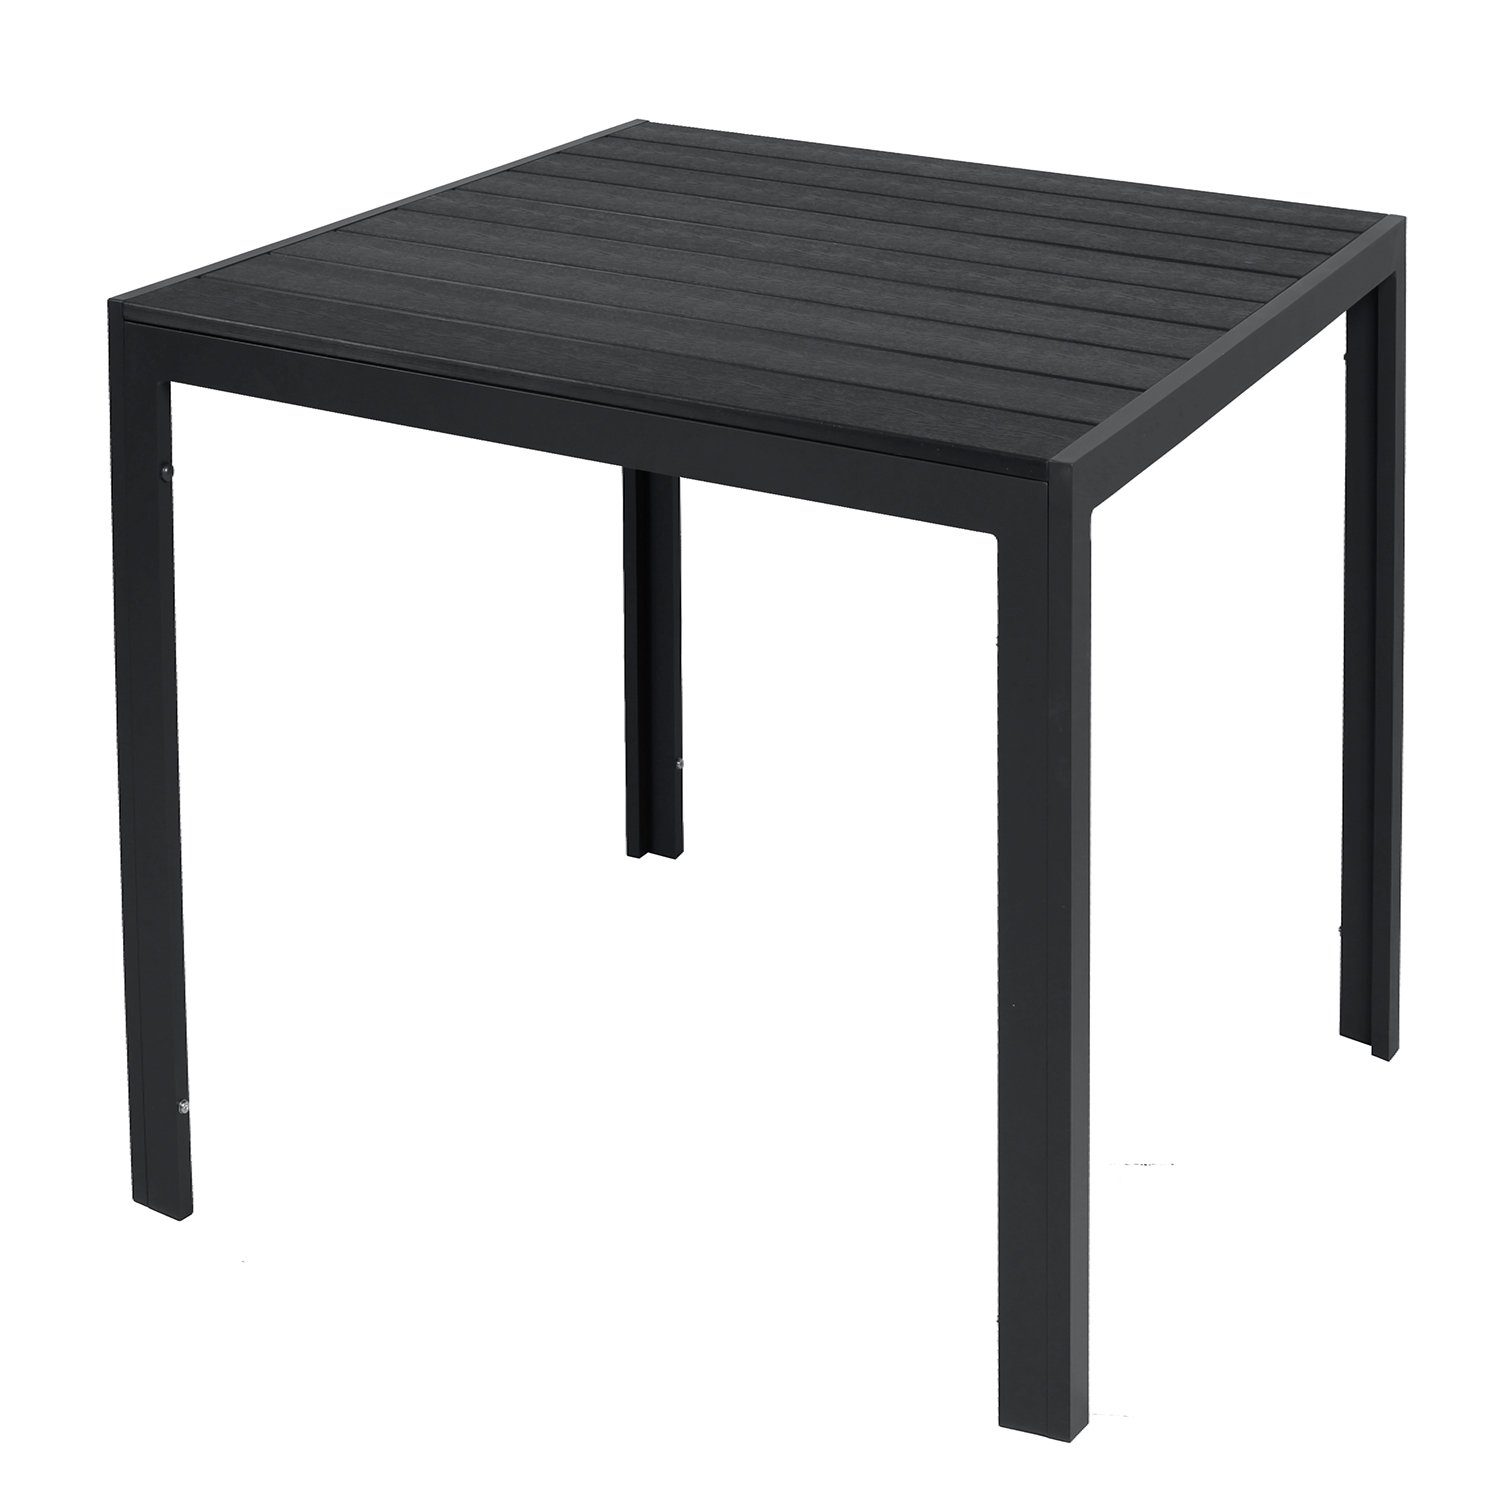 INDA-Exclusiv Küchentisch Non-Wood Gartentisch schwarz / 80x80cm anthrazit Aluminium